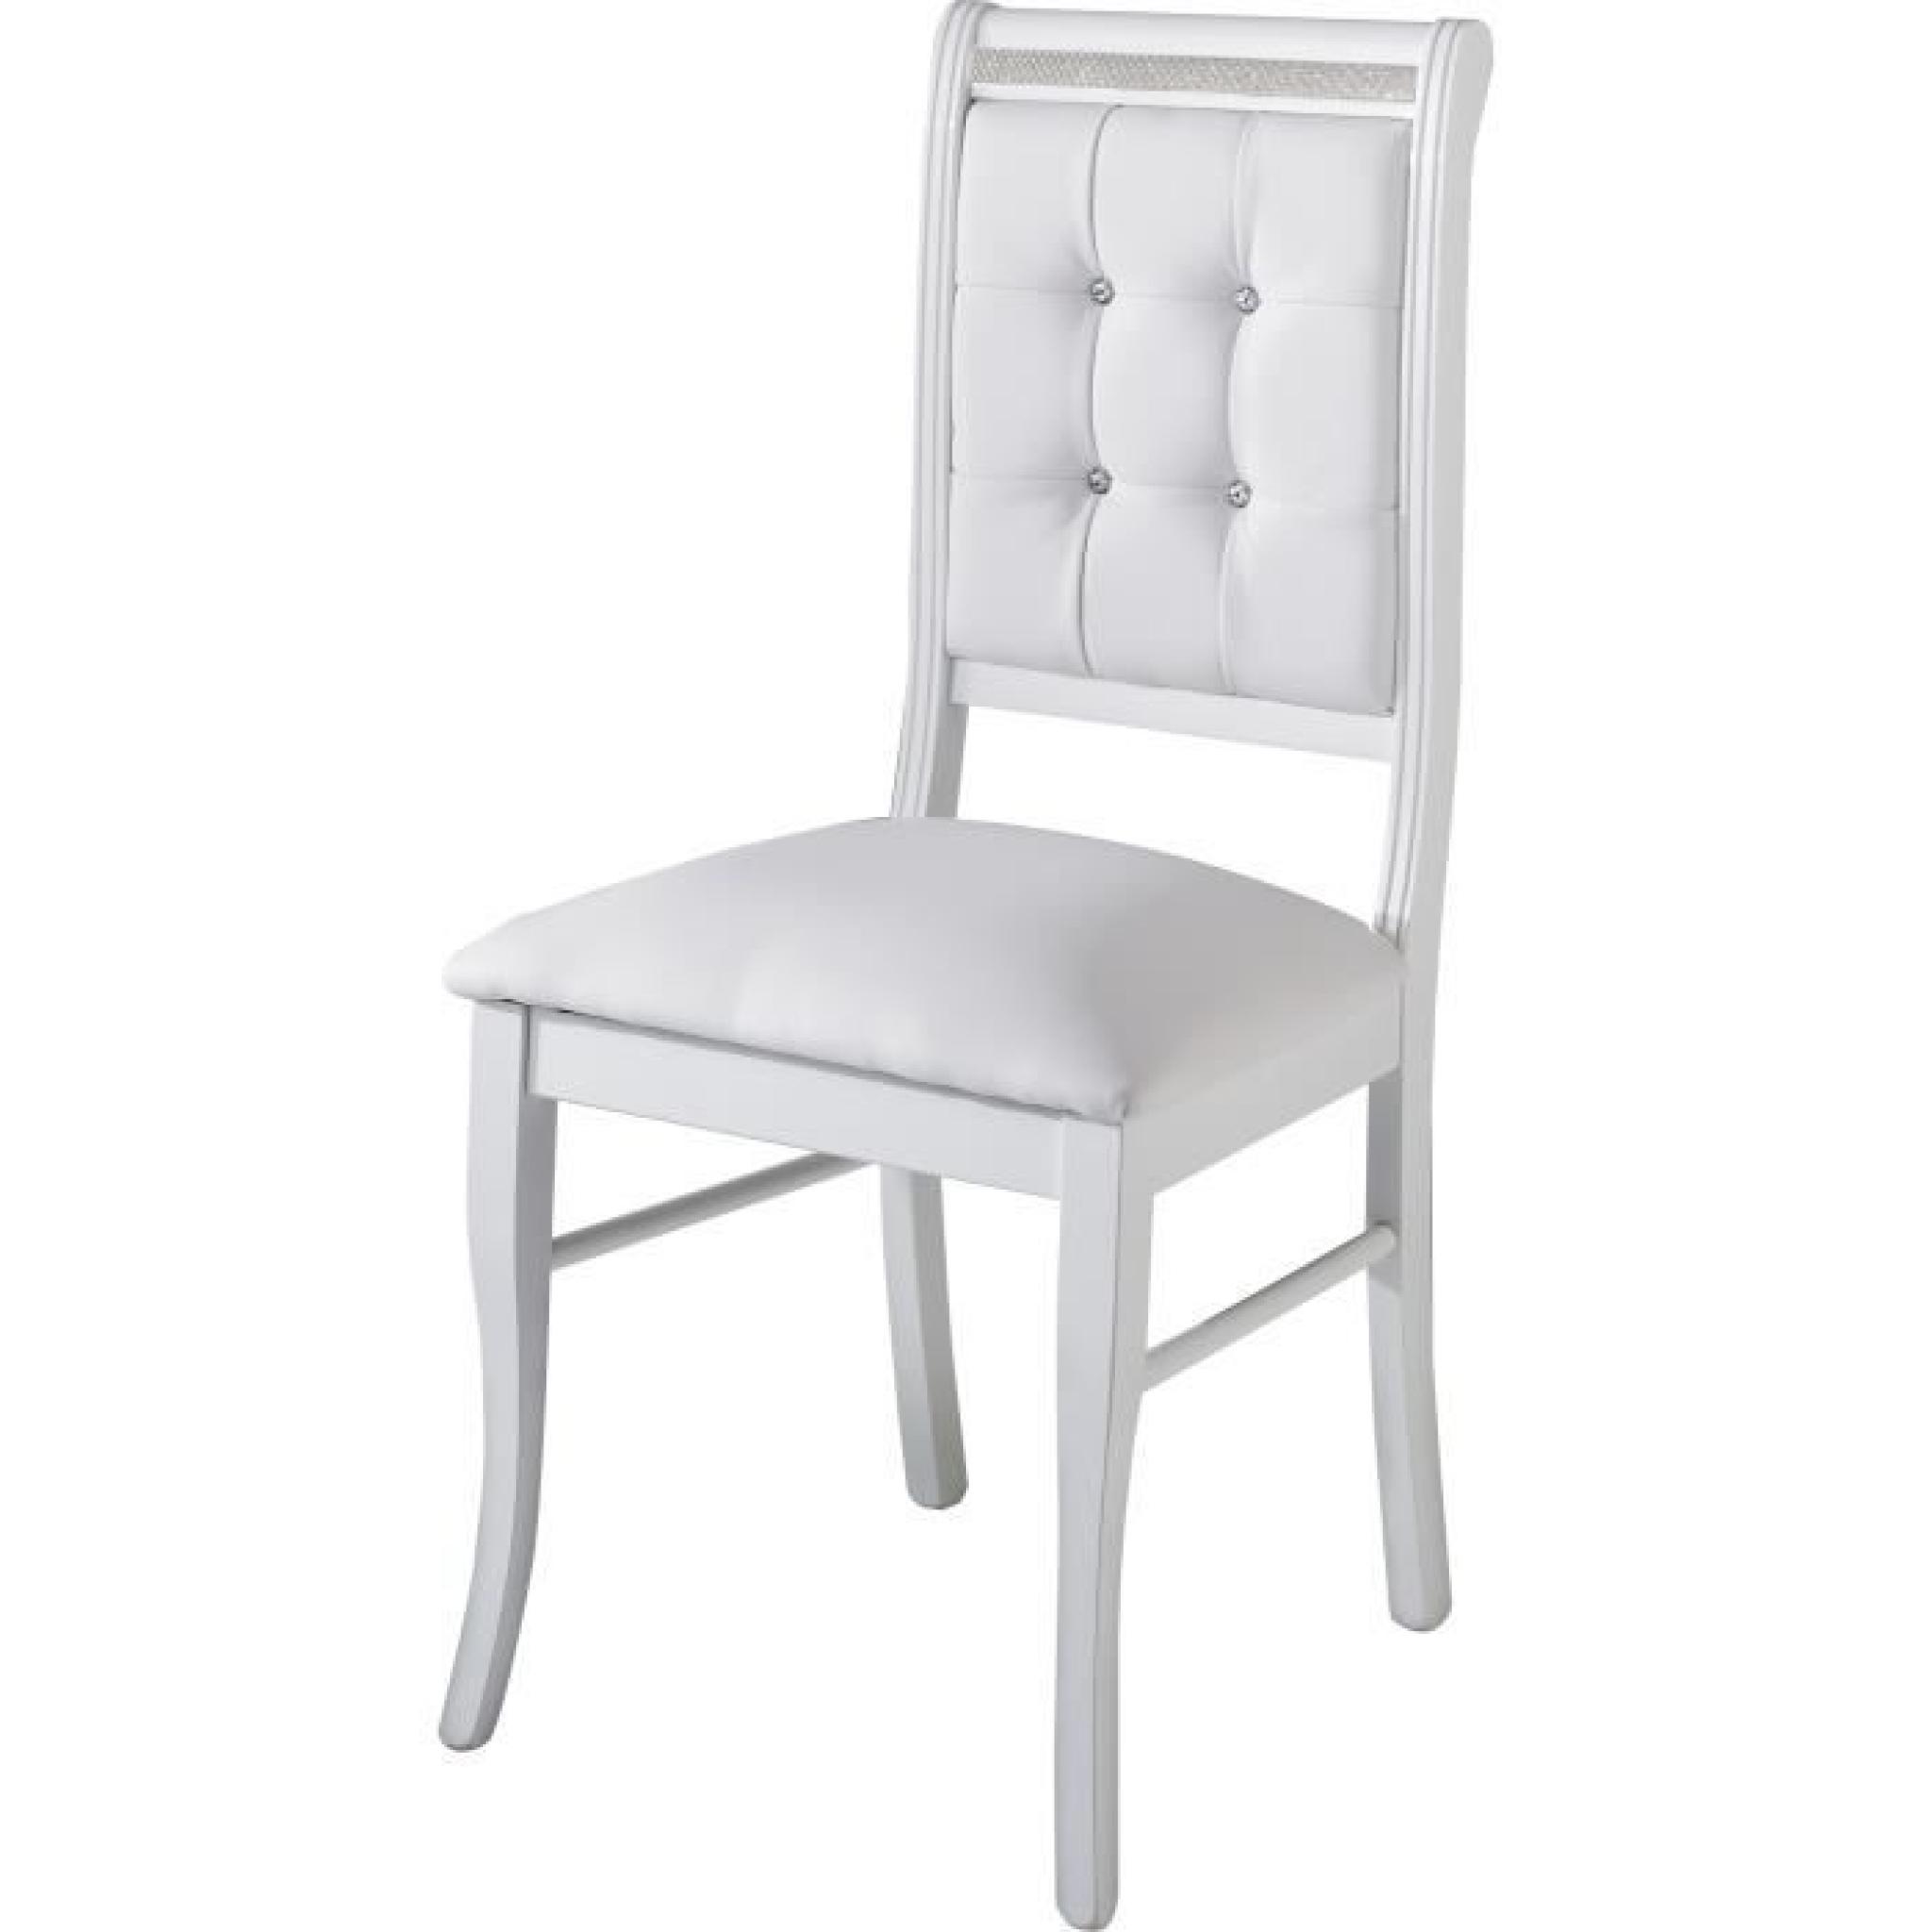 Table à manger 190 cm blanc + 4 chaises ultra design blanc pas cher